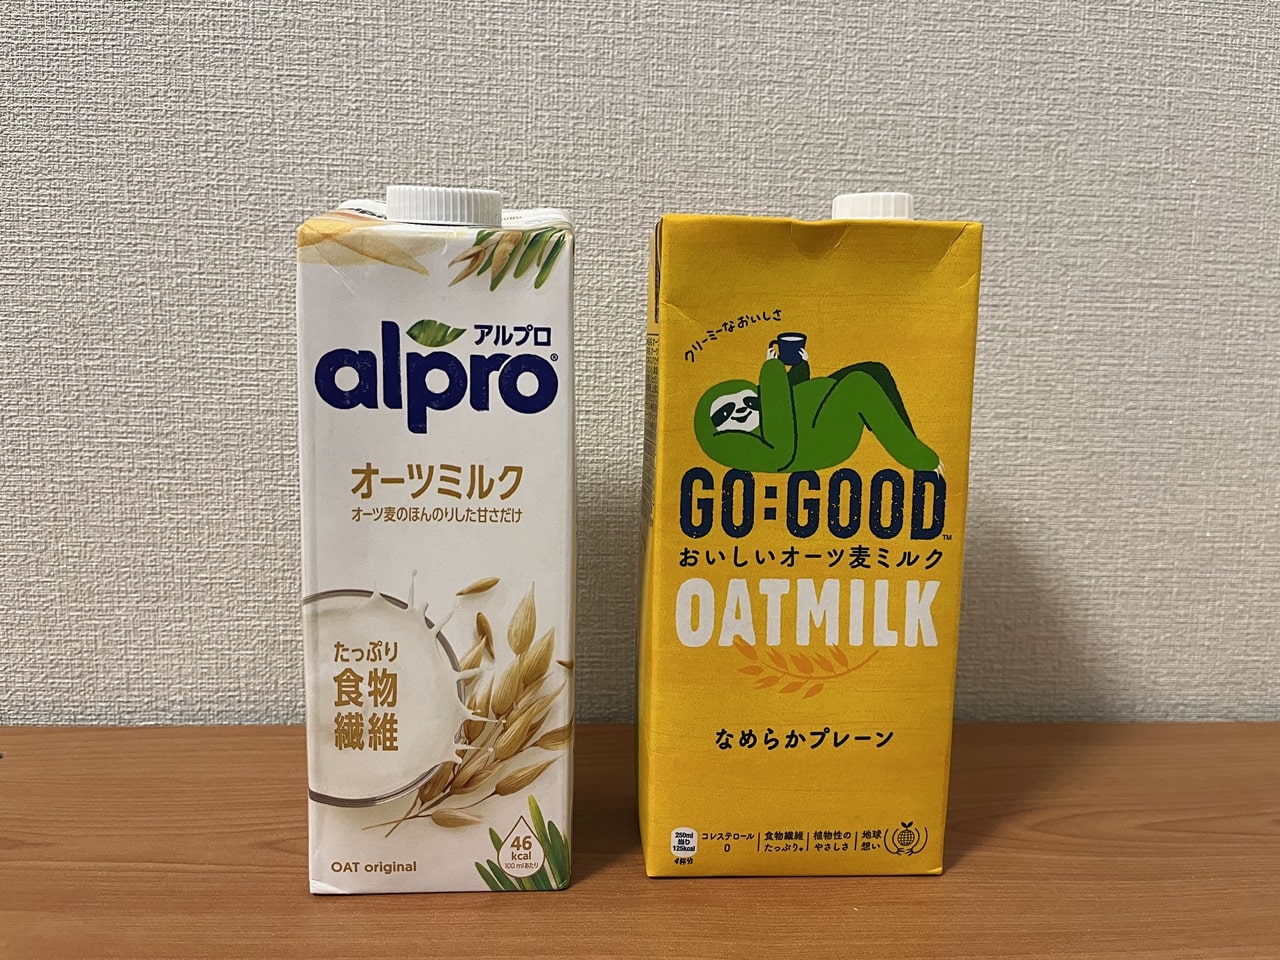 2種類のオーツミルク